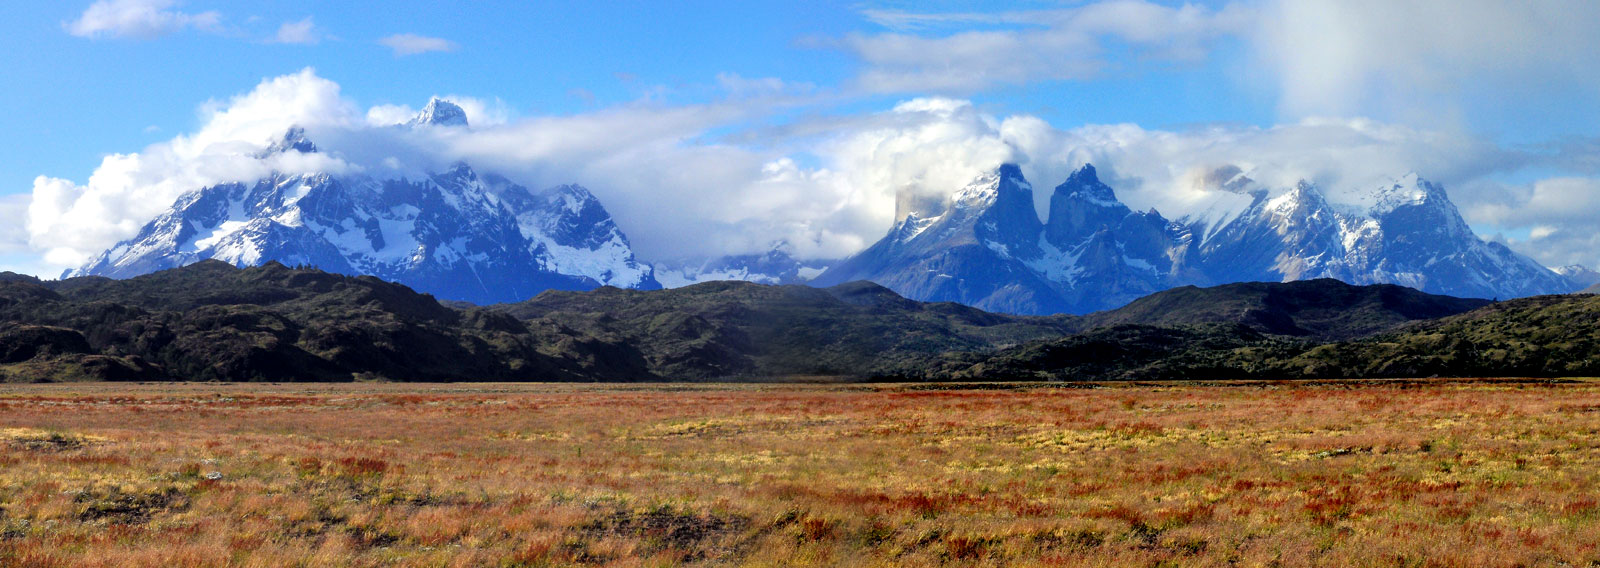 Parque Nacional Torres del Paine - Chile